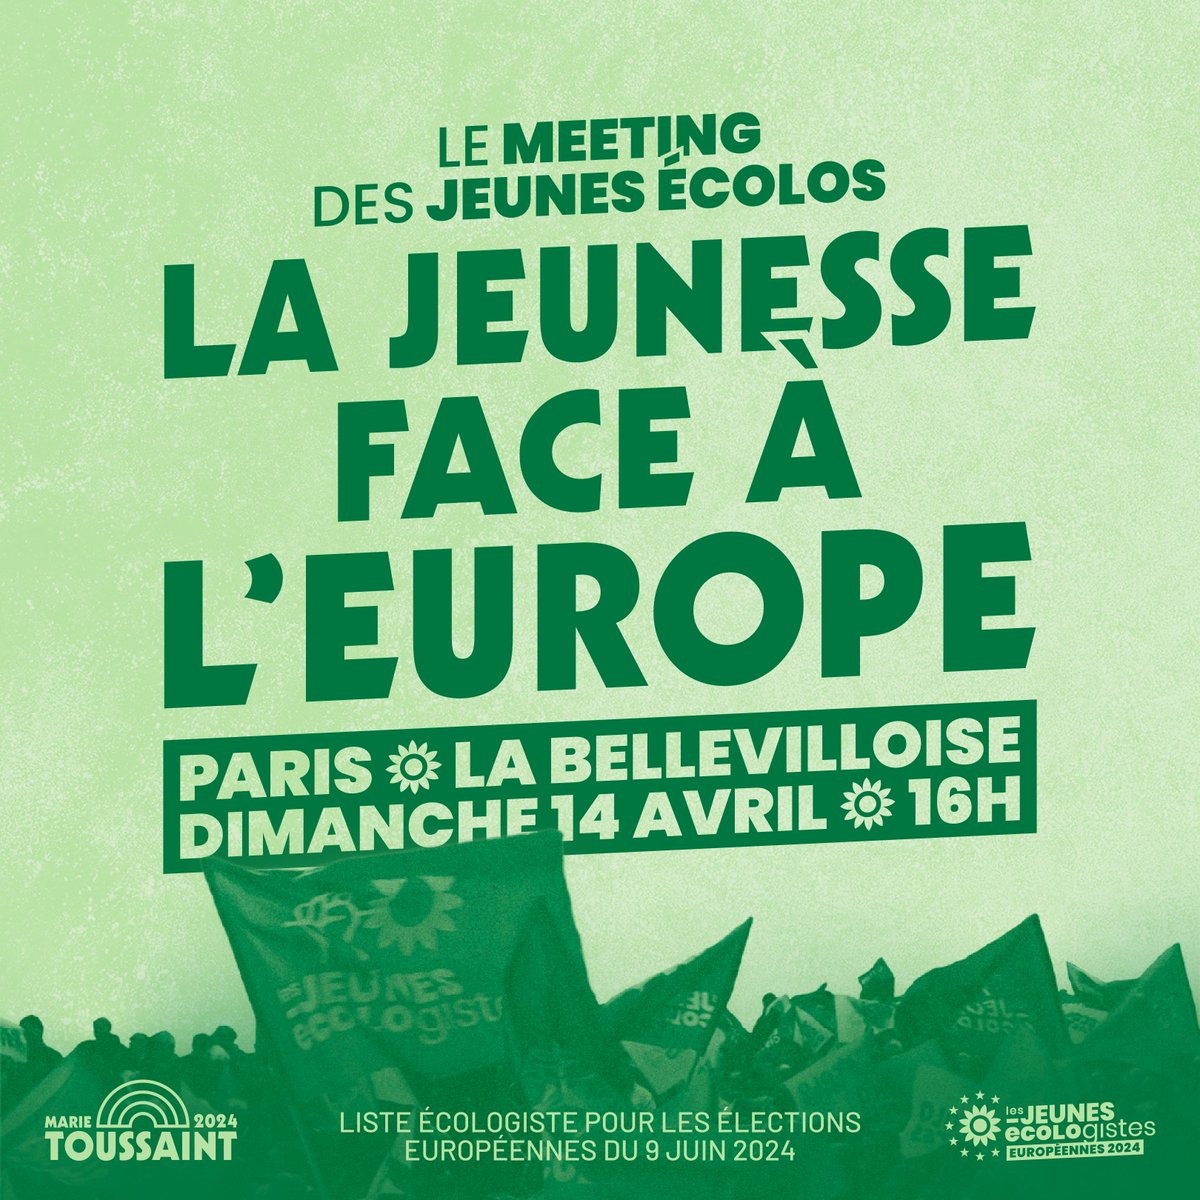 Le 14 avril : on donne la parole aux jeunes ! Dérèglement climatique, précarité, montée de l'extrême droite : nous avons besoin d’un projet européen de rupture. Ce meeting est le votre : les Écologistes repondront aux questions de la jeunesse. ➡️ tinyurl.com/Meeting-Jeunes…